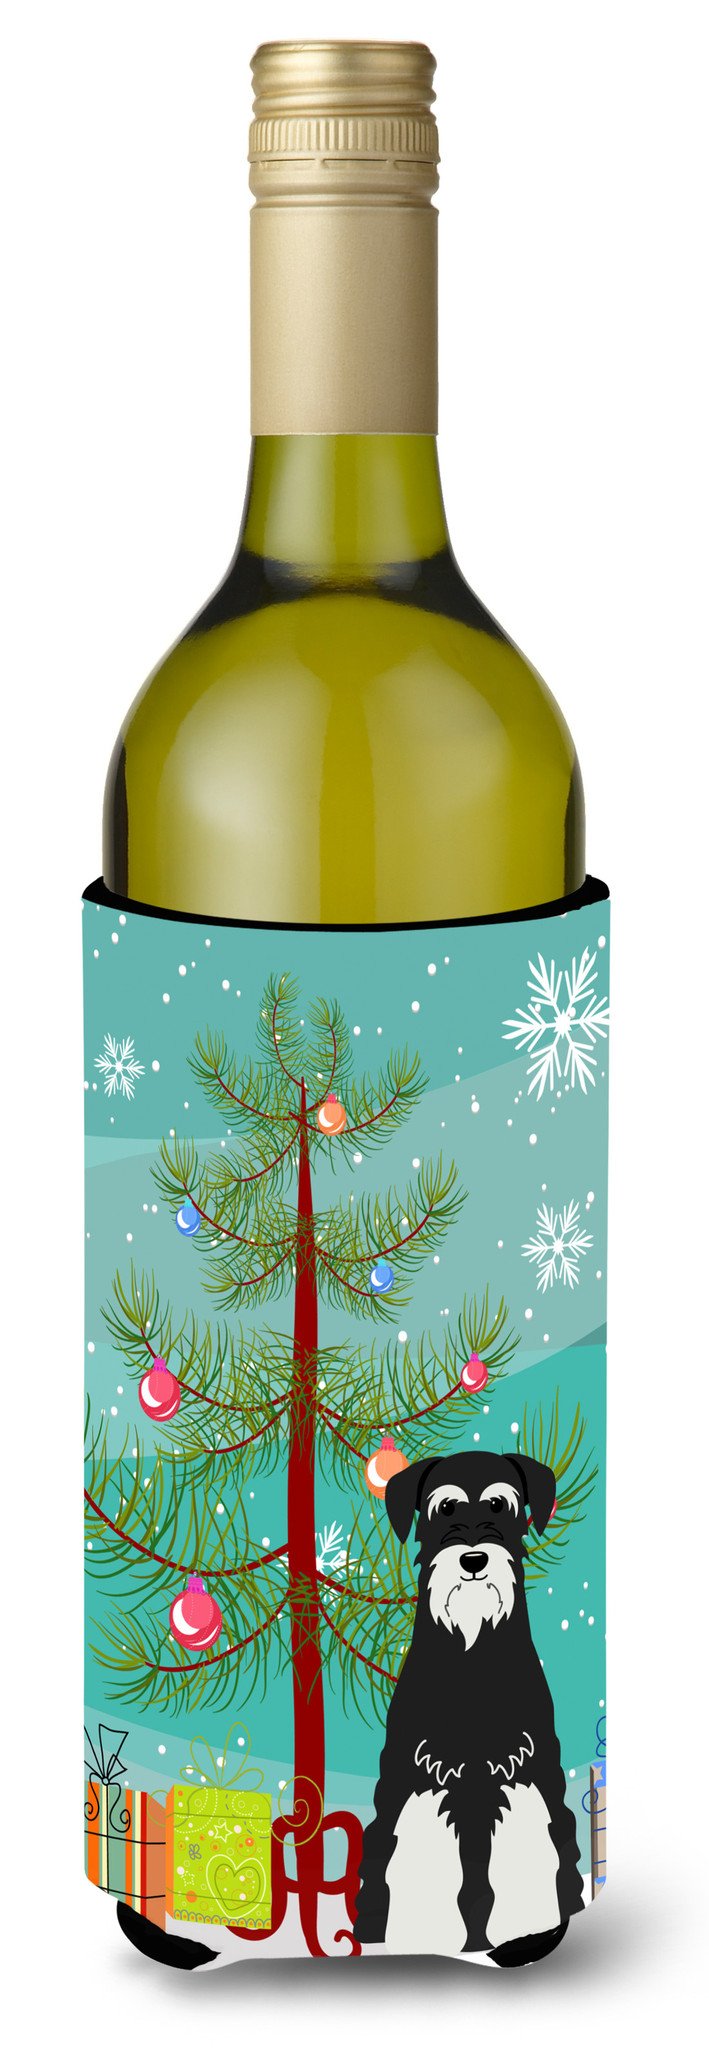 Merry Christmas Tree Standard Schnauzer Salt and Pepper Wine Bottle Beverge Insulator Hugger BB4158LITERK by Caroline's Treasures